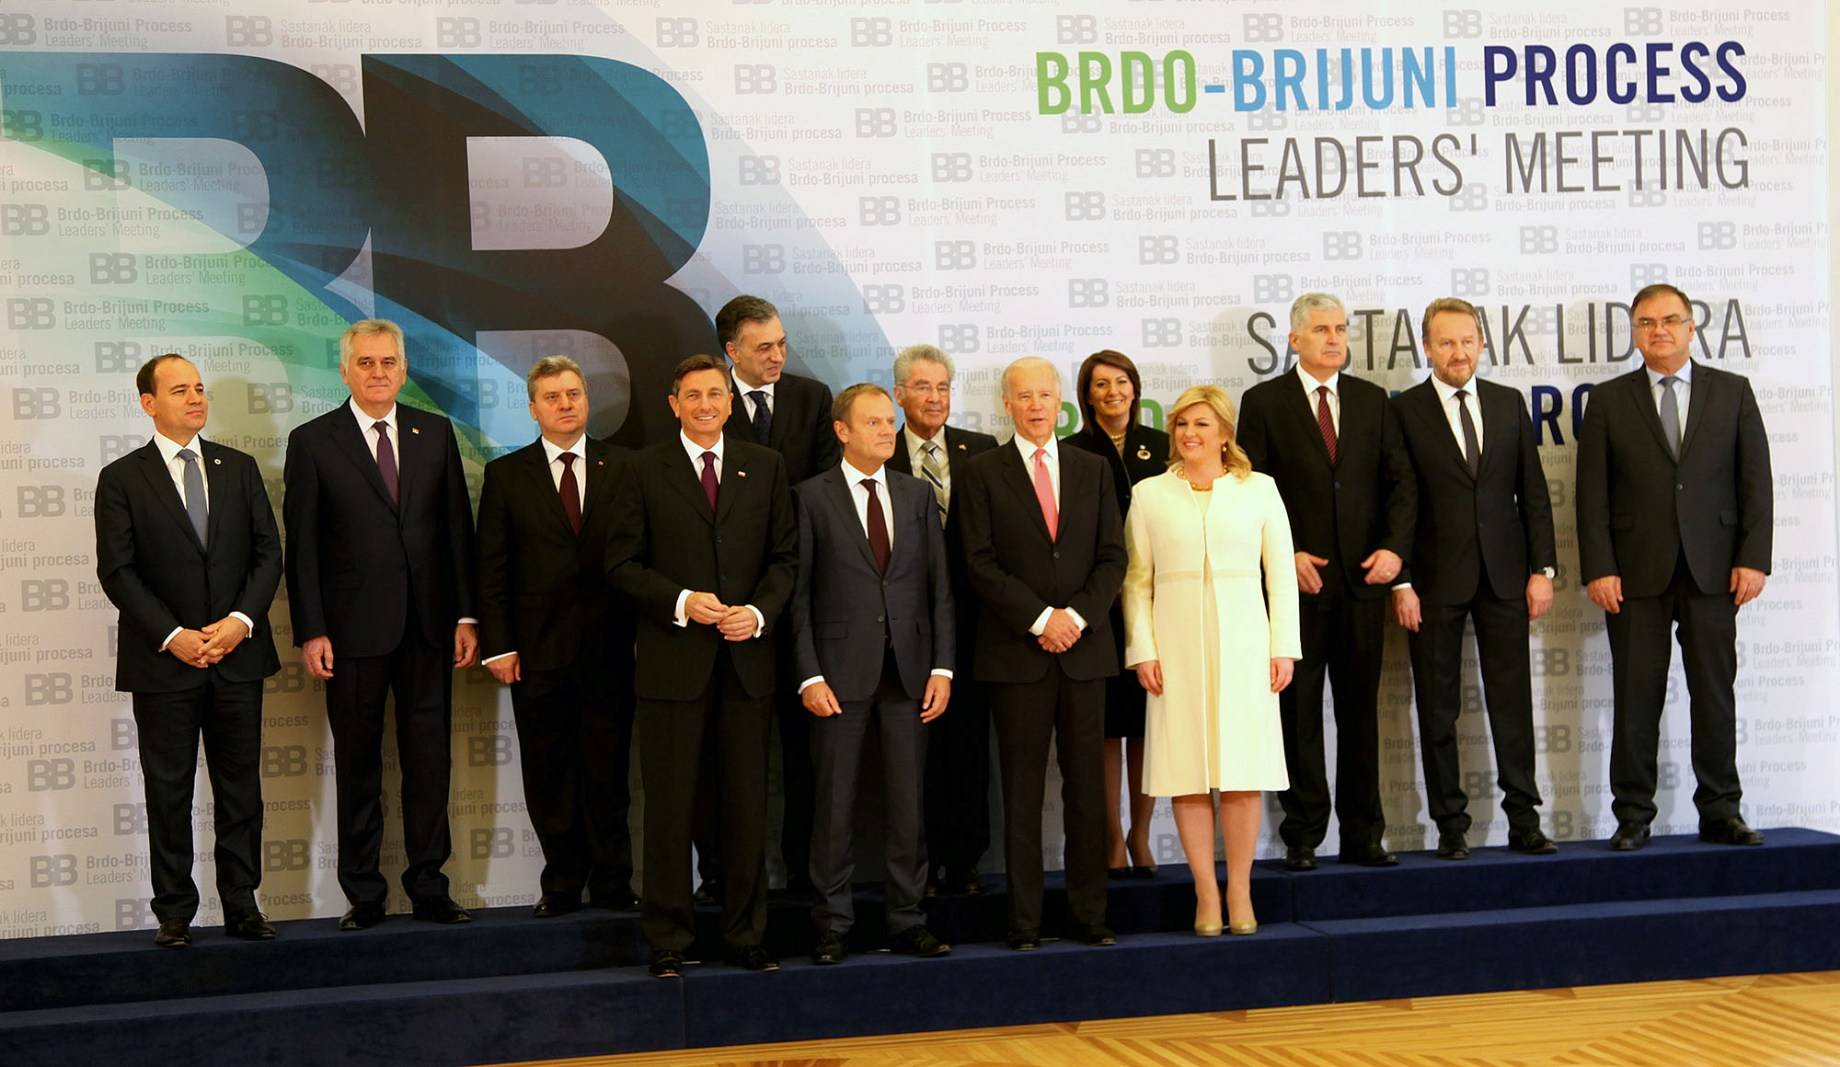 Presidentja Jahjaga mori pjesë në Samitin Bërdo-Brioni në Zagreb